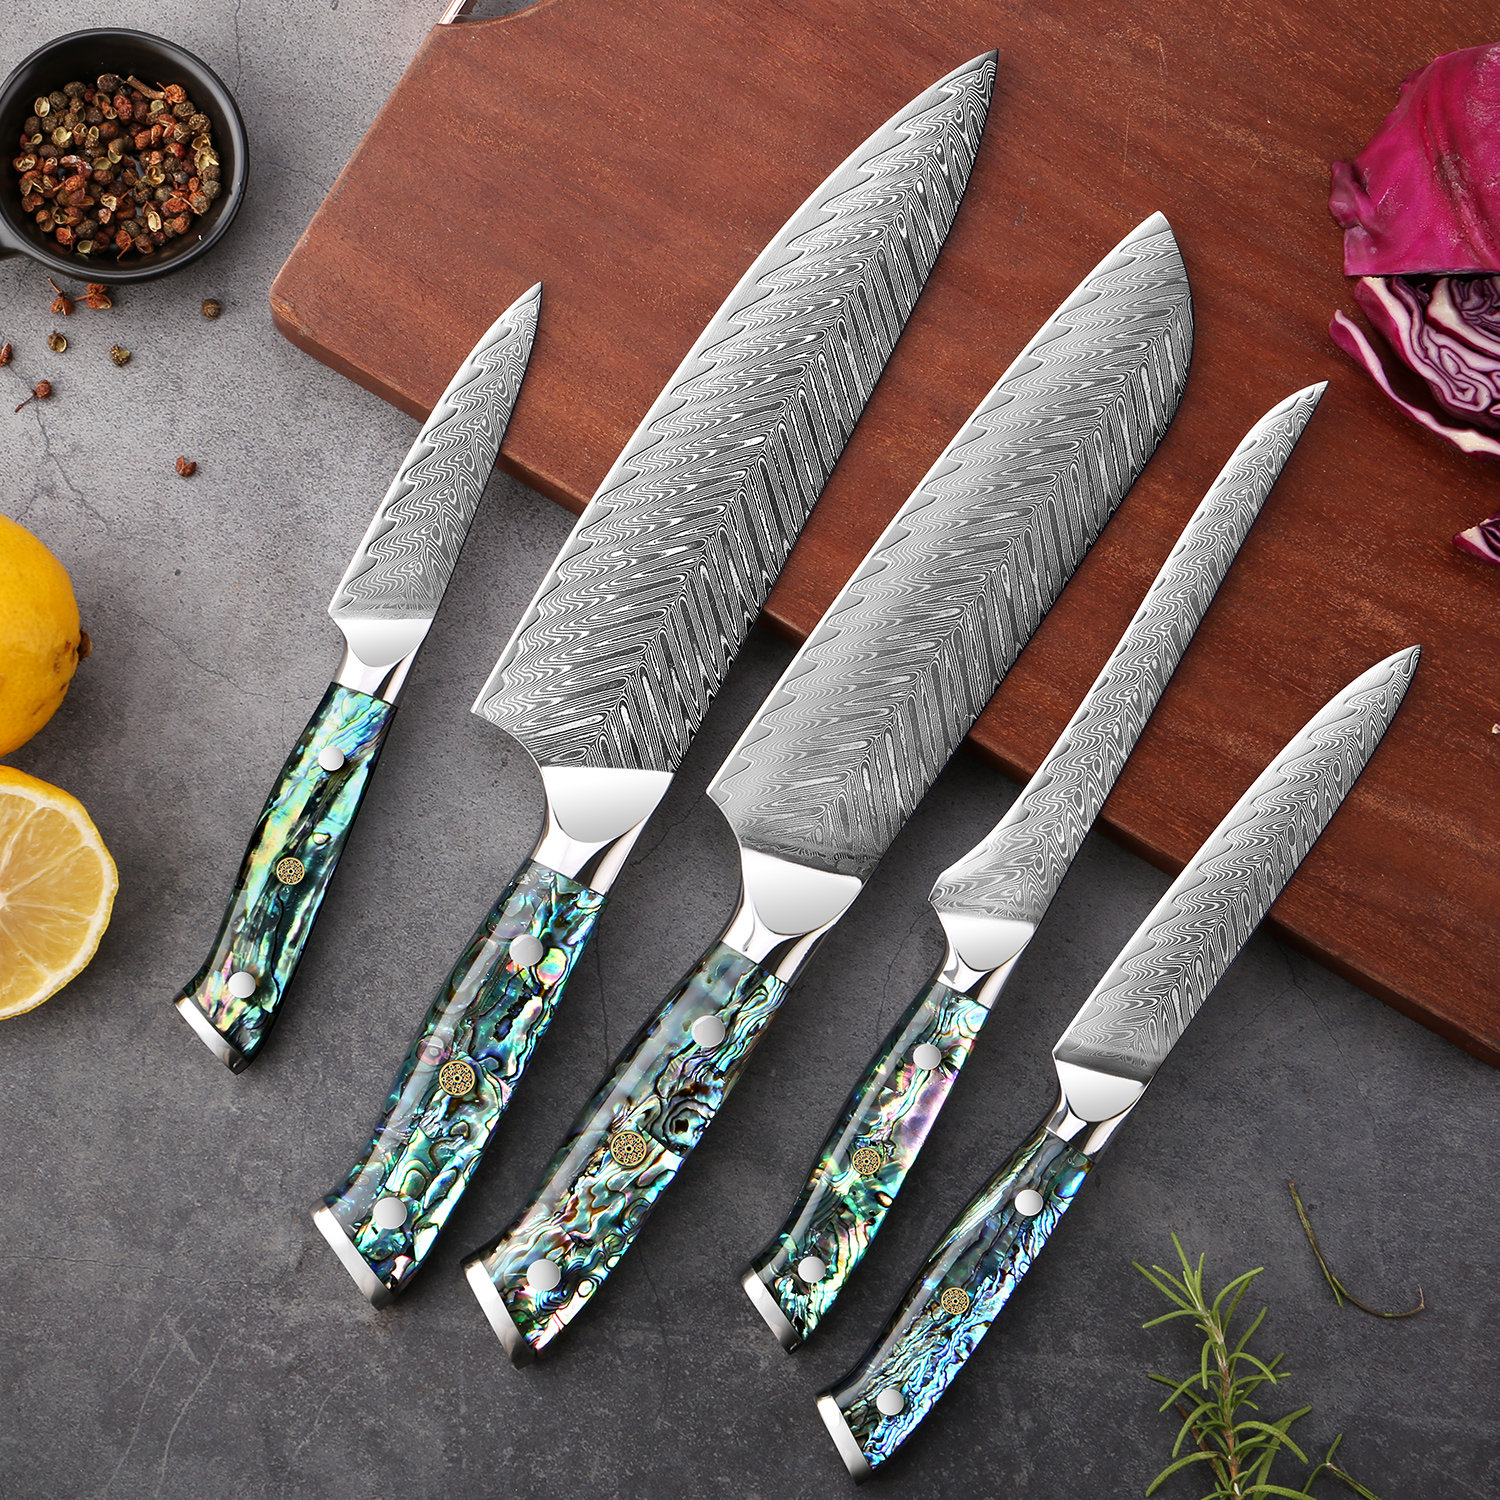 https://assets.wfcdn.com/im/86609013/compr-r85/2369/236954437/senken-knives-5-piece-damascus-steel-assorted-knife-set.jpg